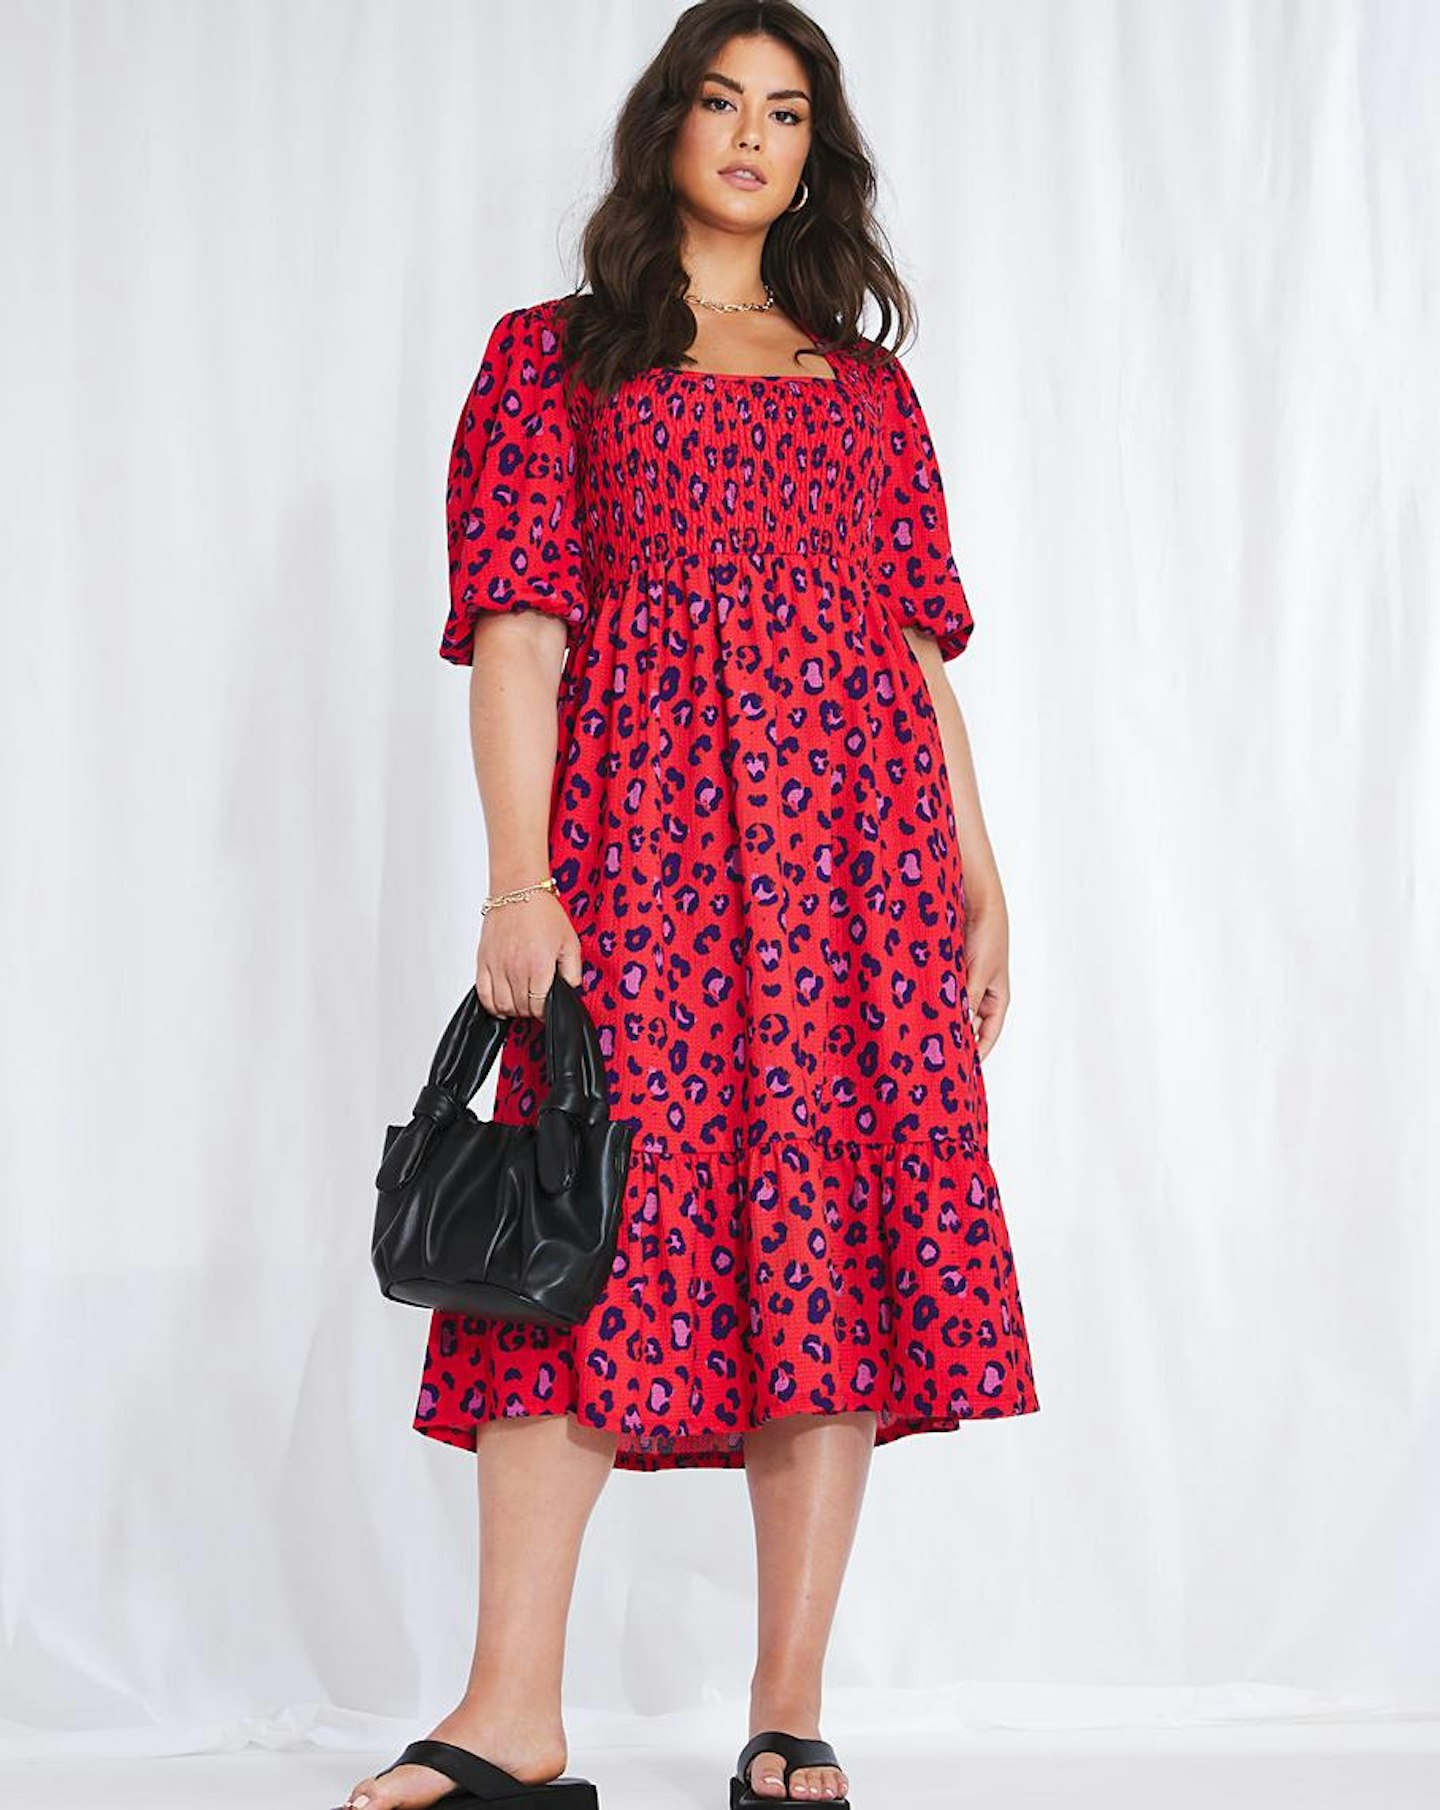 Simply Be, Emma Mattinson Red Leopard Midi Dress, £42